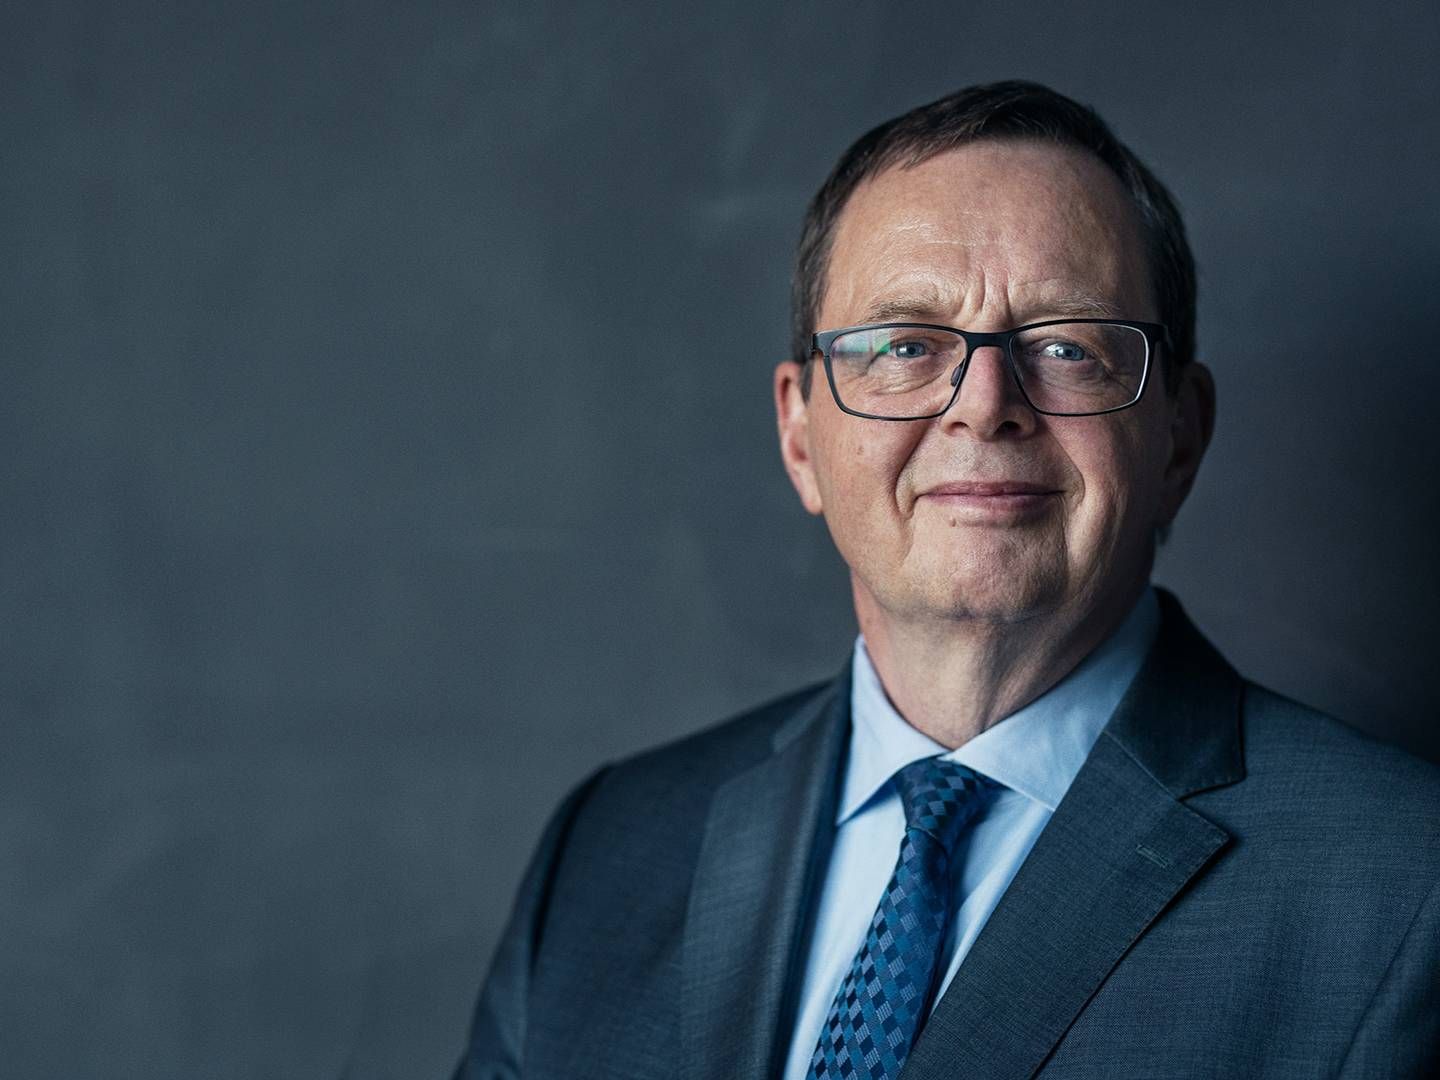 Ny direktør for Nationalbanken, Christian Kettel Thomsen, overtager forgængerens bekymring for boligmarkedet. | Foto: Pr